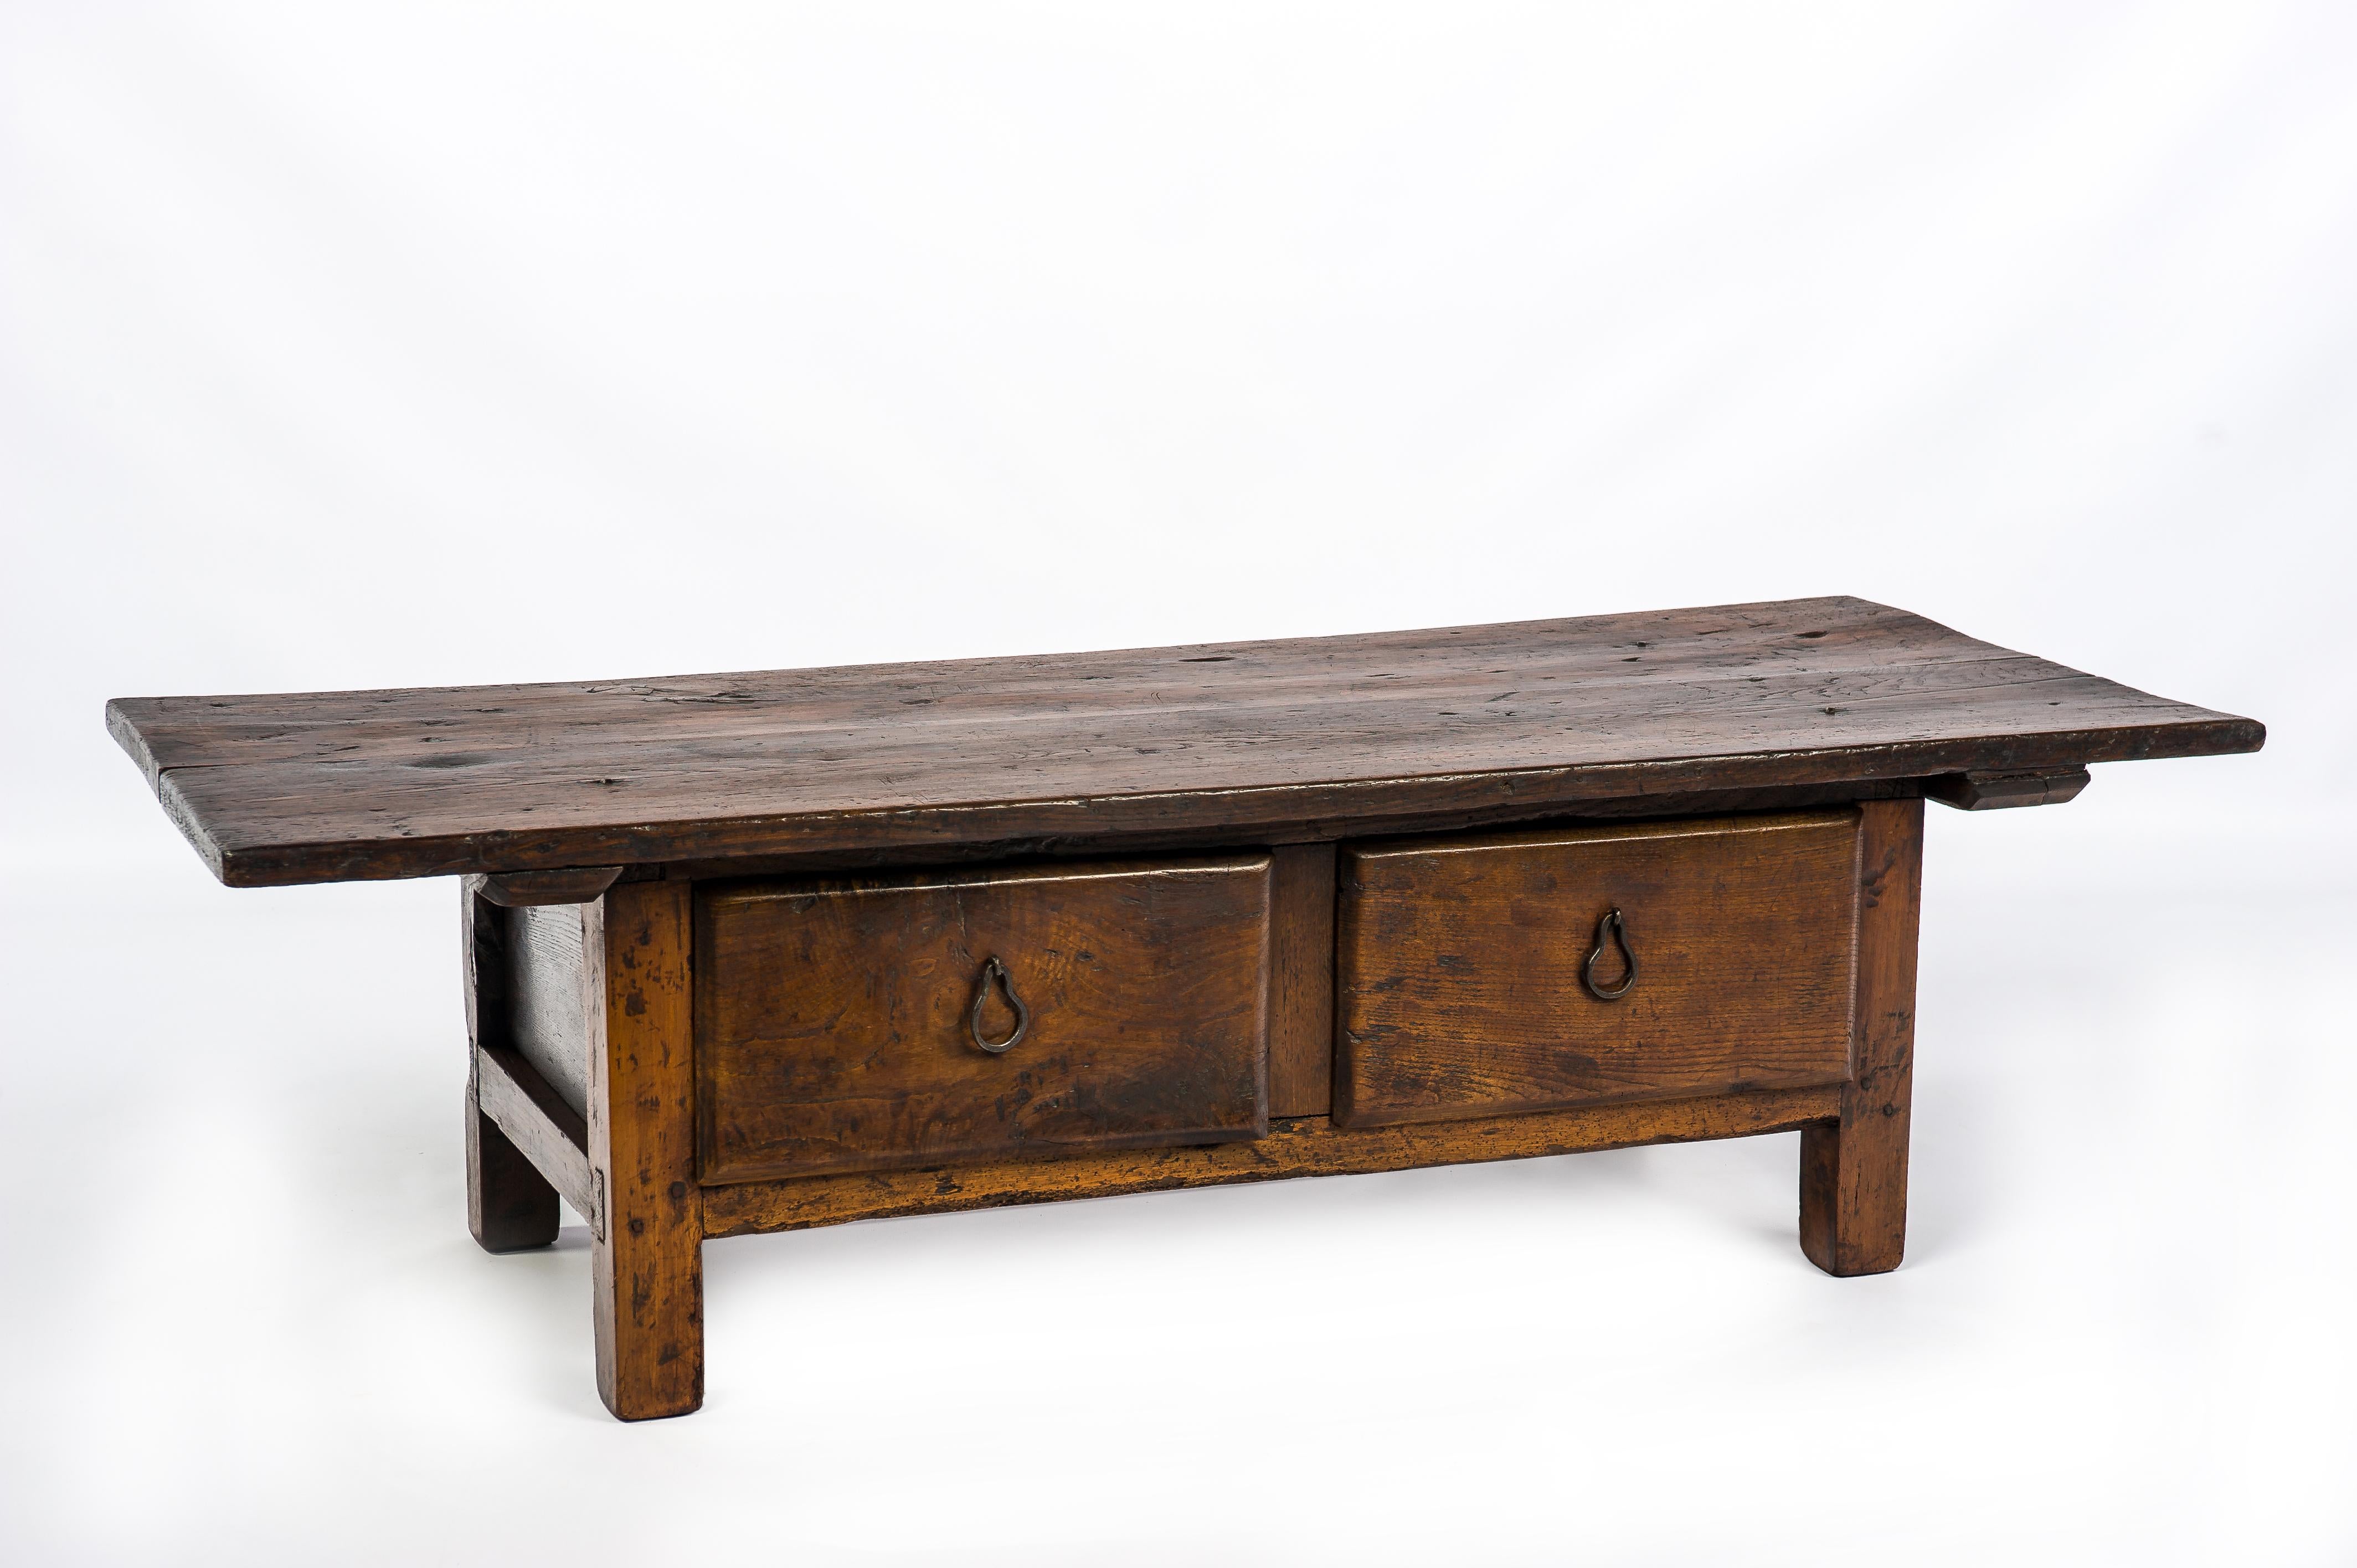 Cette magnifique table basse rustique de couleur marron chaud provient de l'Espagne rurale et date d'environ 1750. La table est dotée d'un superbe plateau fabriqué à partir de deux planches de bois de châtaignier massif de 1,2 pouce d'épaisseur. Le